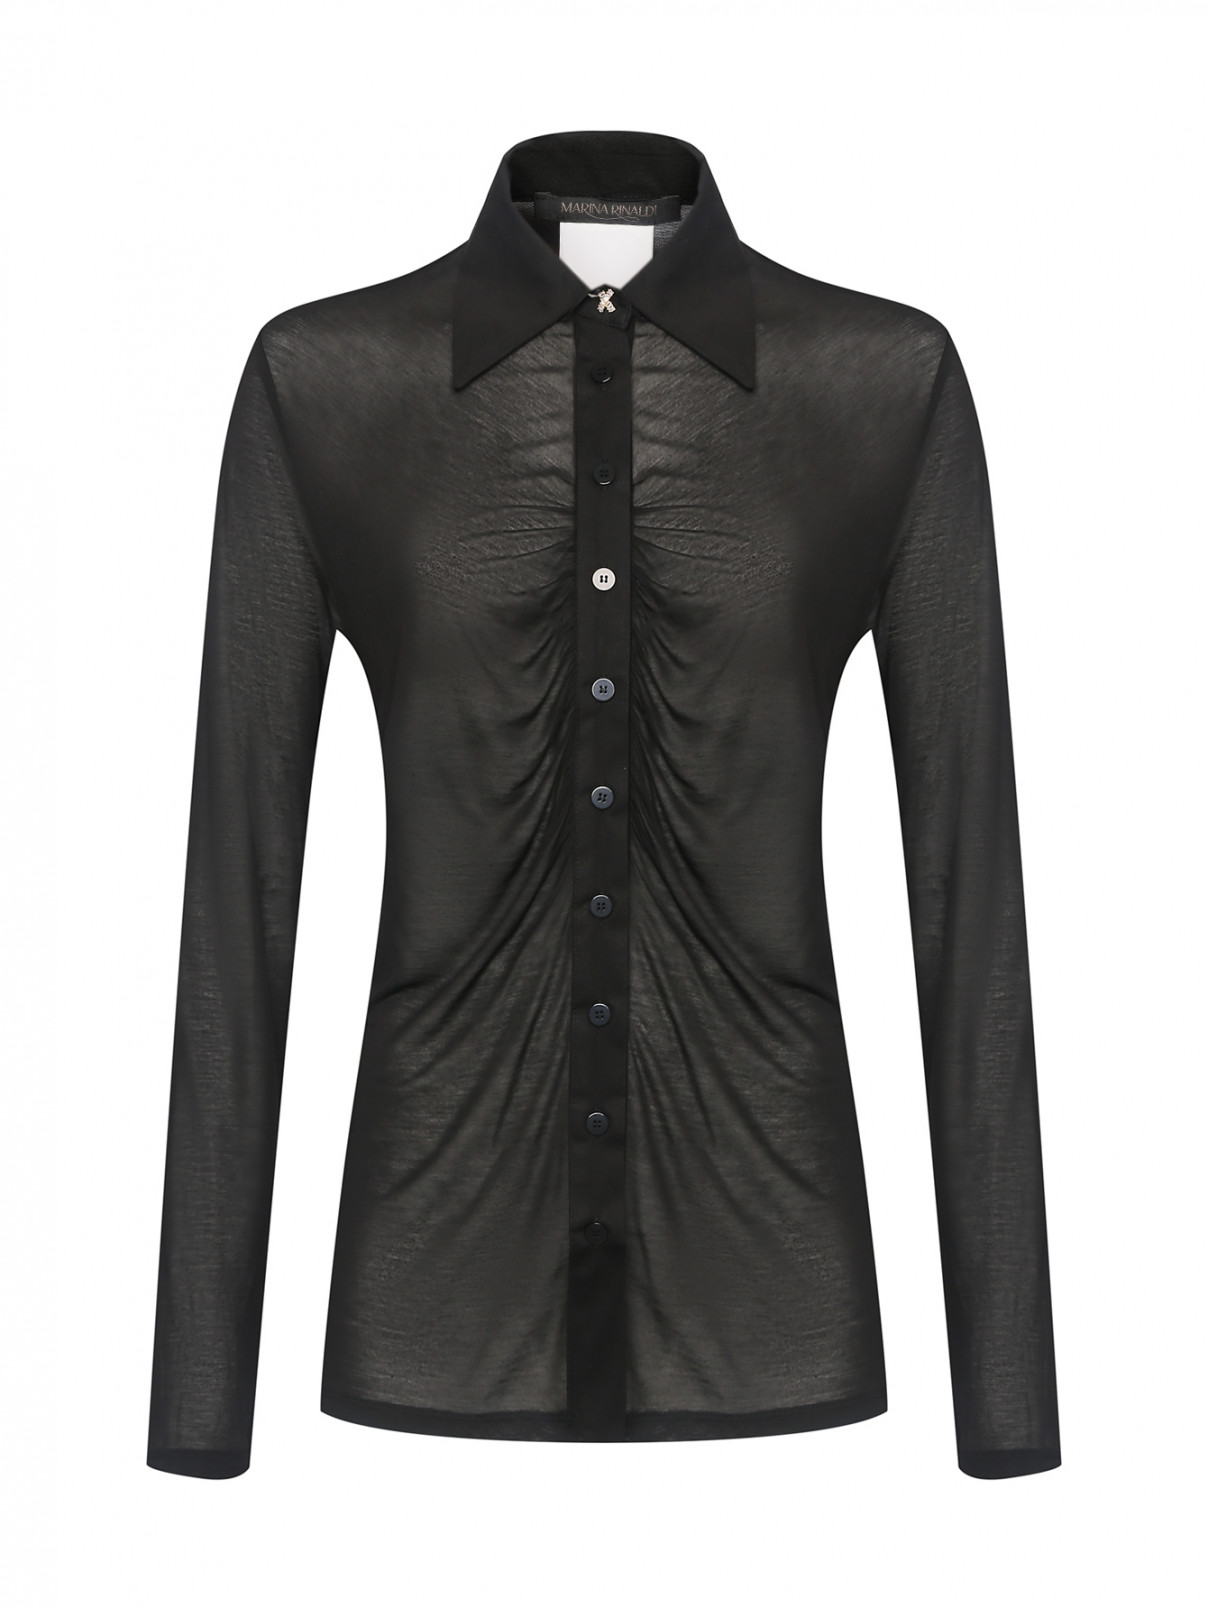 Однотонная блуза на пуговицах Marina Rinaldi  –  Общий вид  – Цвет:  Черный